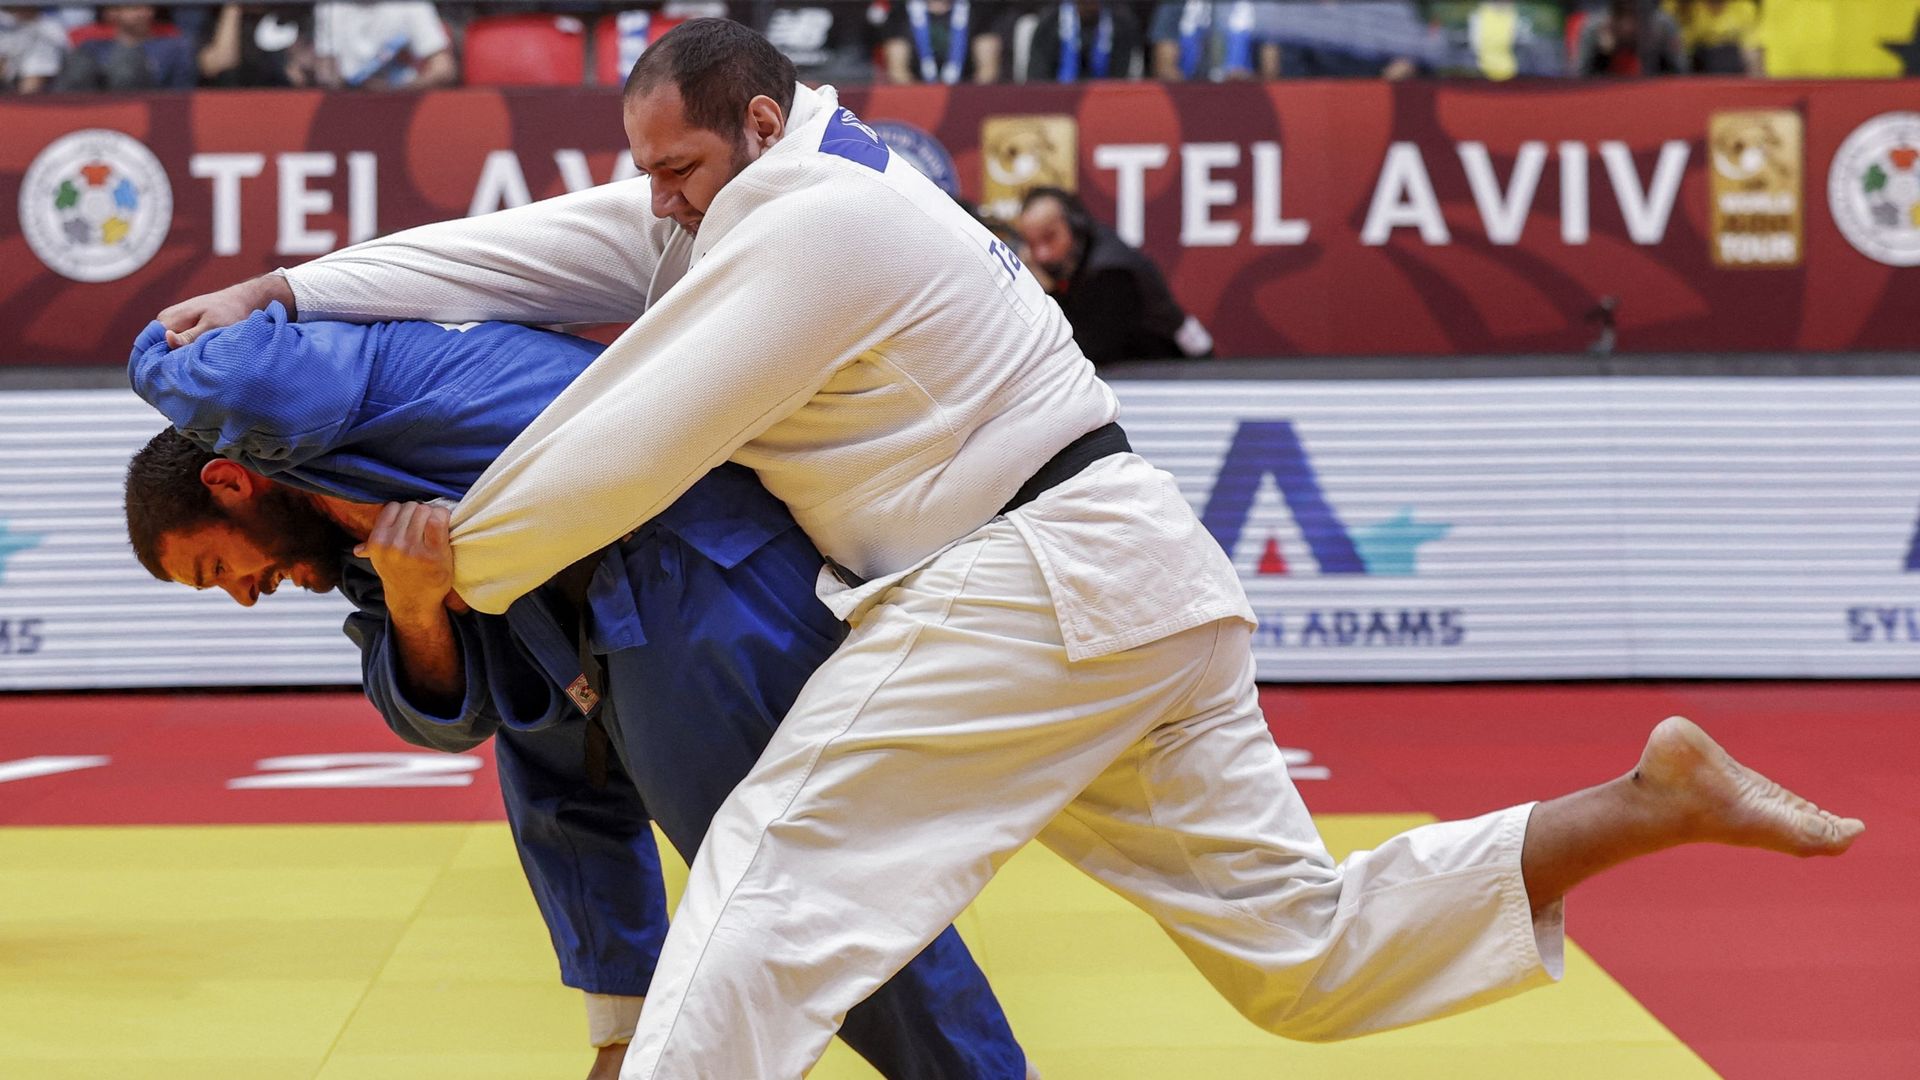 Rafael Silva contre Guram Tushishvili pour la médaille d’or lors du Grand Chelem de judo de Tel Aviv le 19 février dernier.